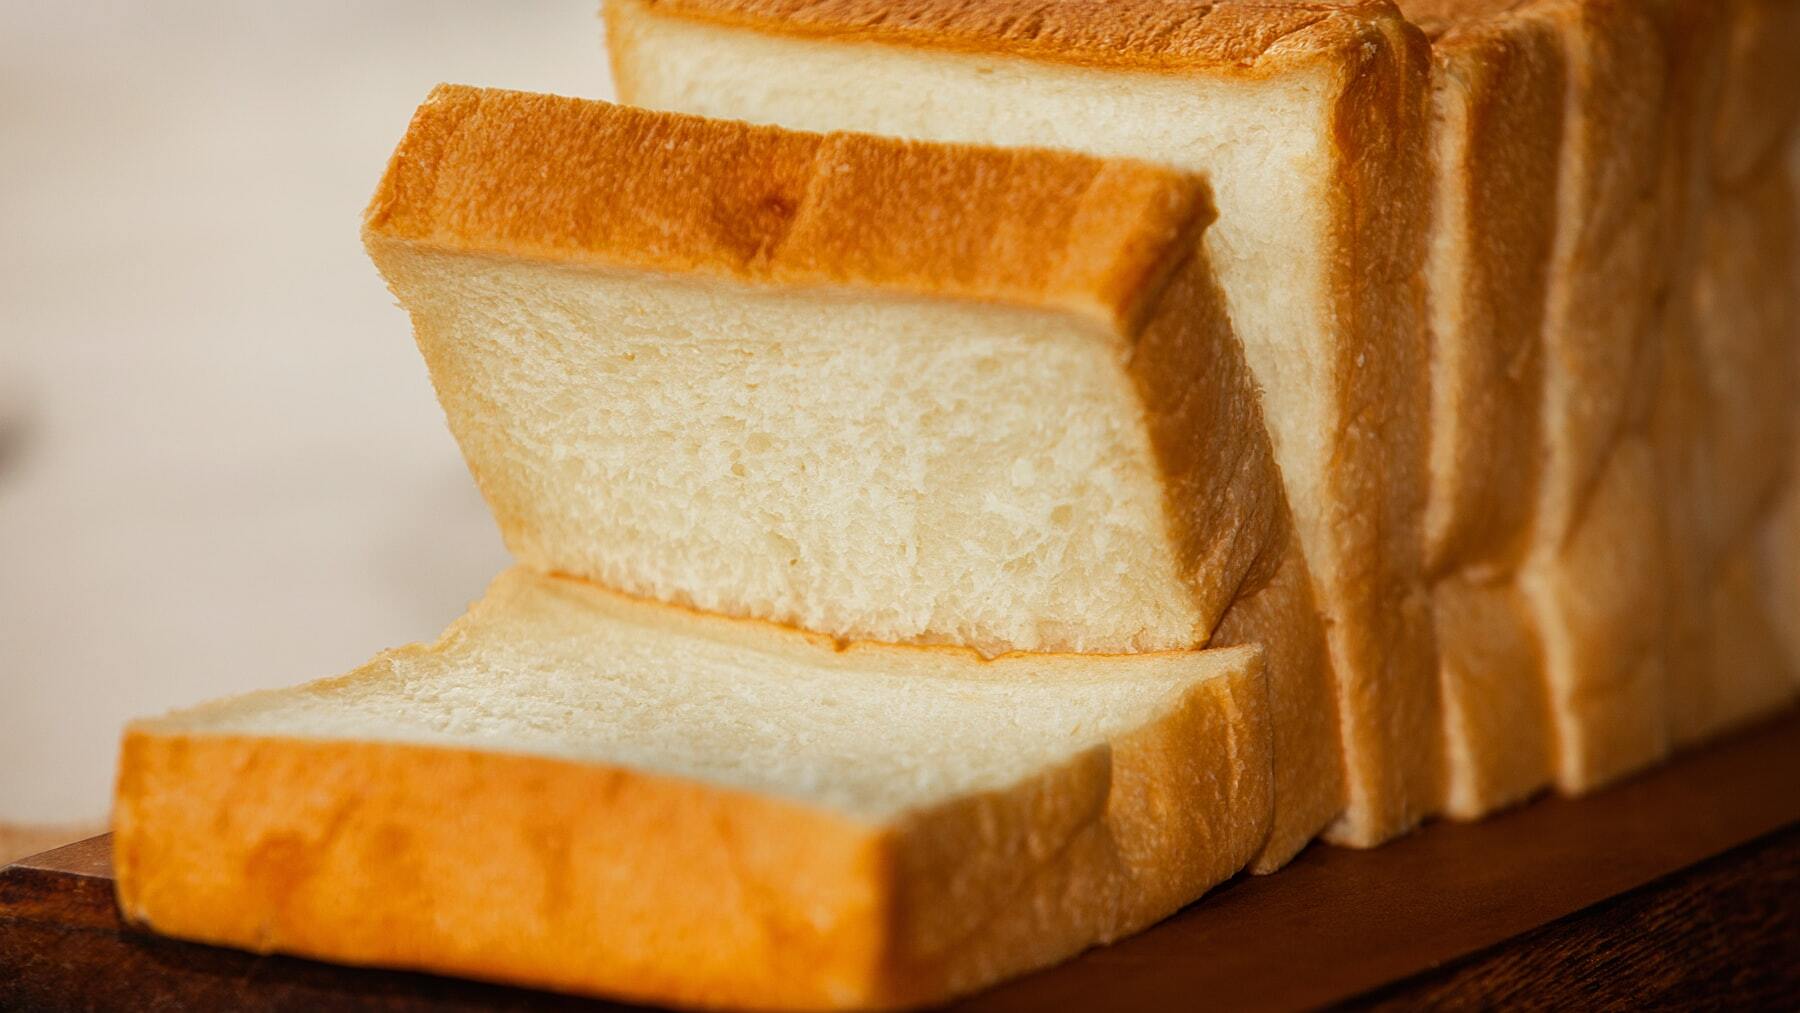 ¿Cómo se llama el alambre con el que cierras el plástico del pan de molde?